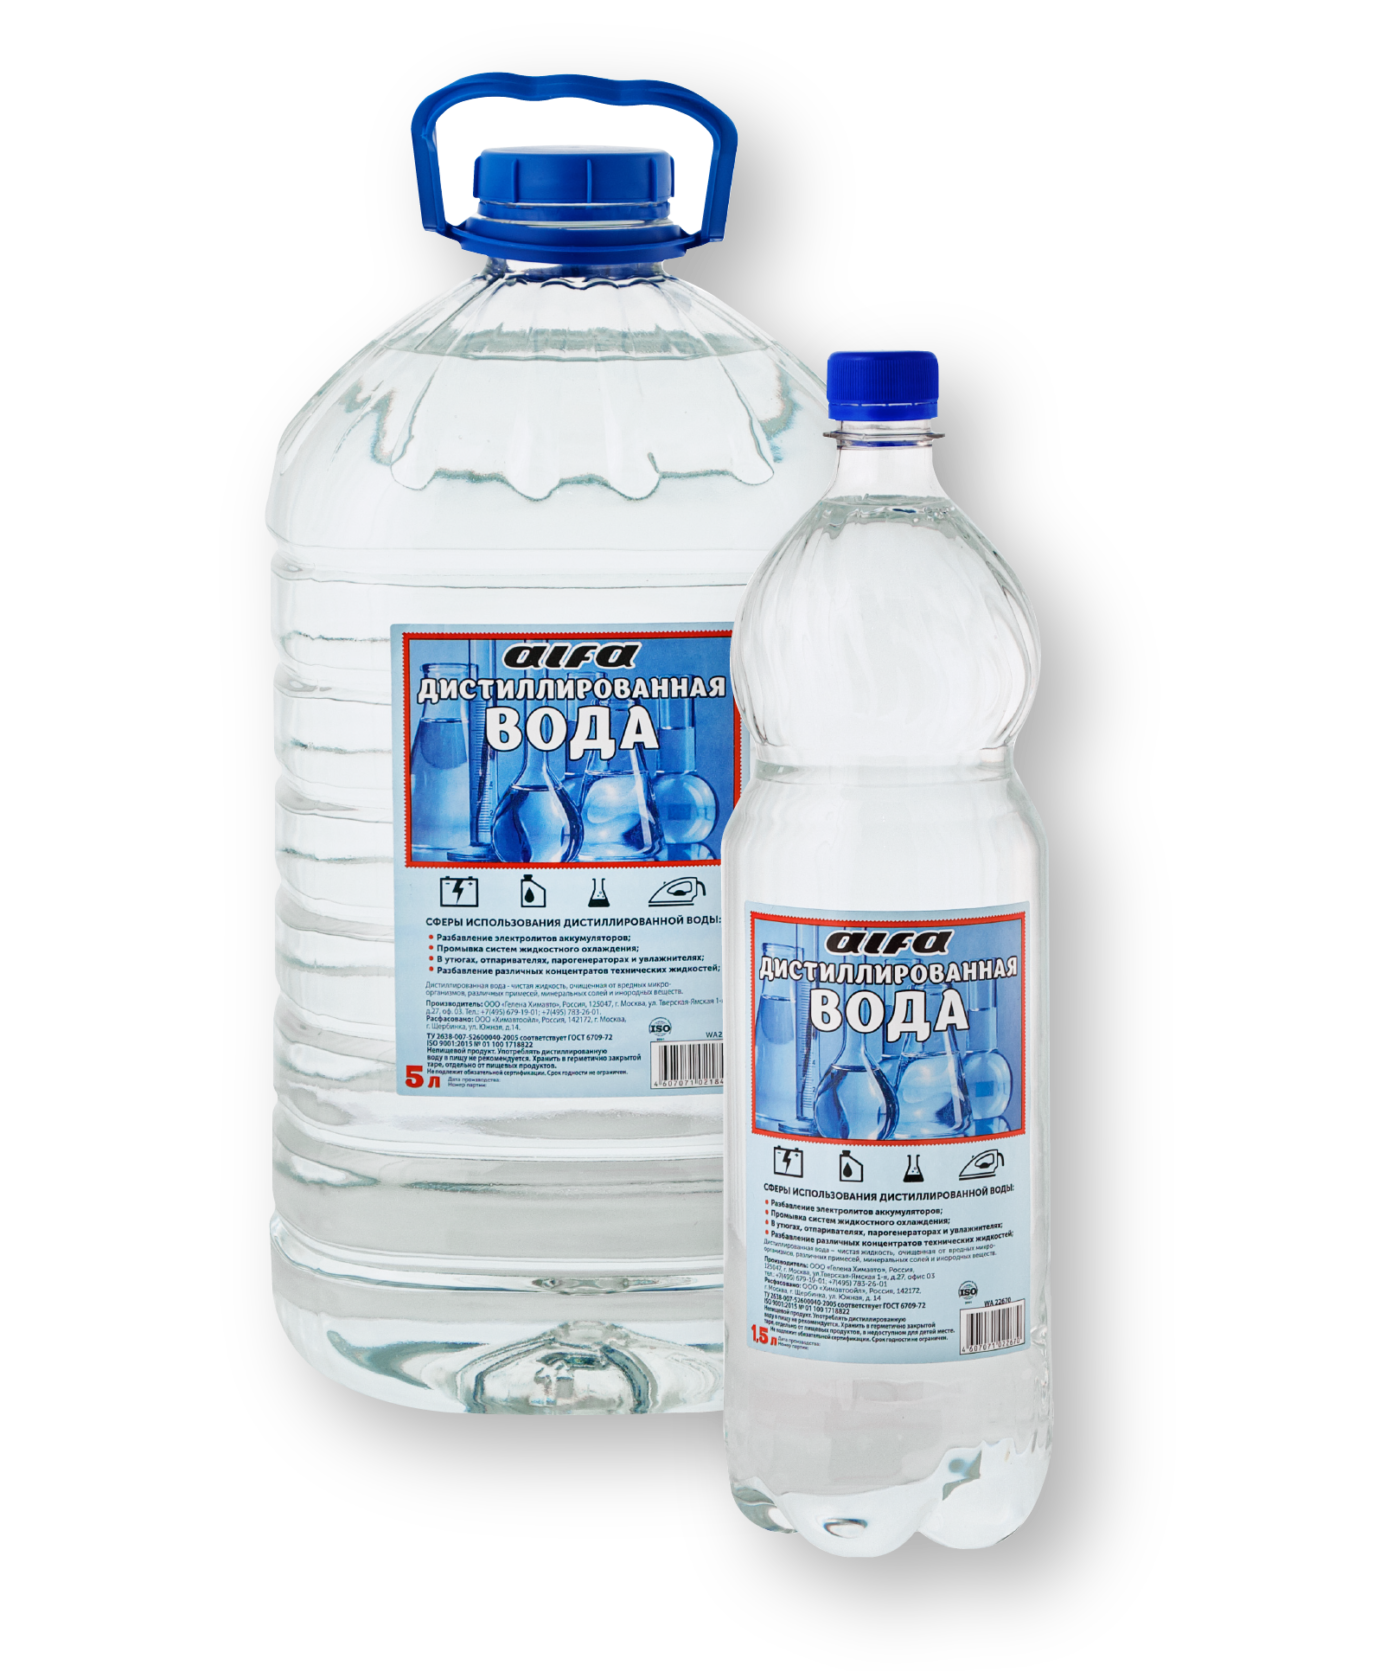 Дистиллированная вода применяется. Вода дистиллированная 20л Alfa ГЕЛЕНАХИМАВТО wa21871. Вода дистиллированная Alfa 5 л. Вода дистиллированная Alfa 5л 1/6. Вода дистиллированная 1,5л eltrans.